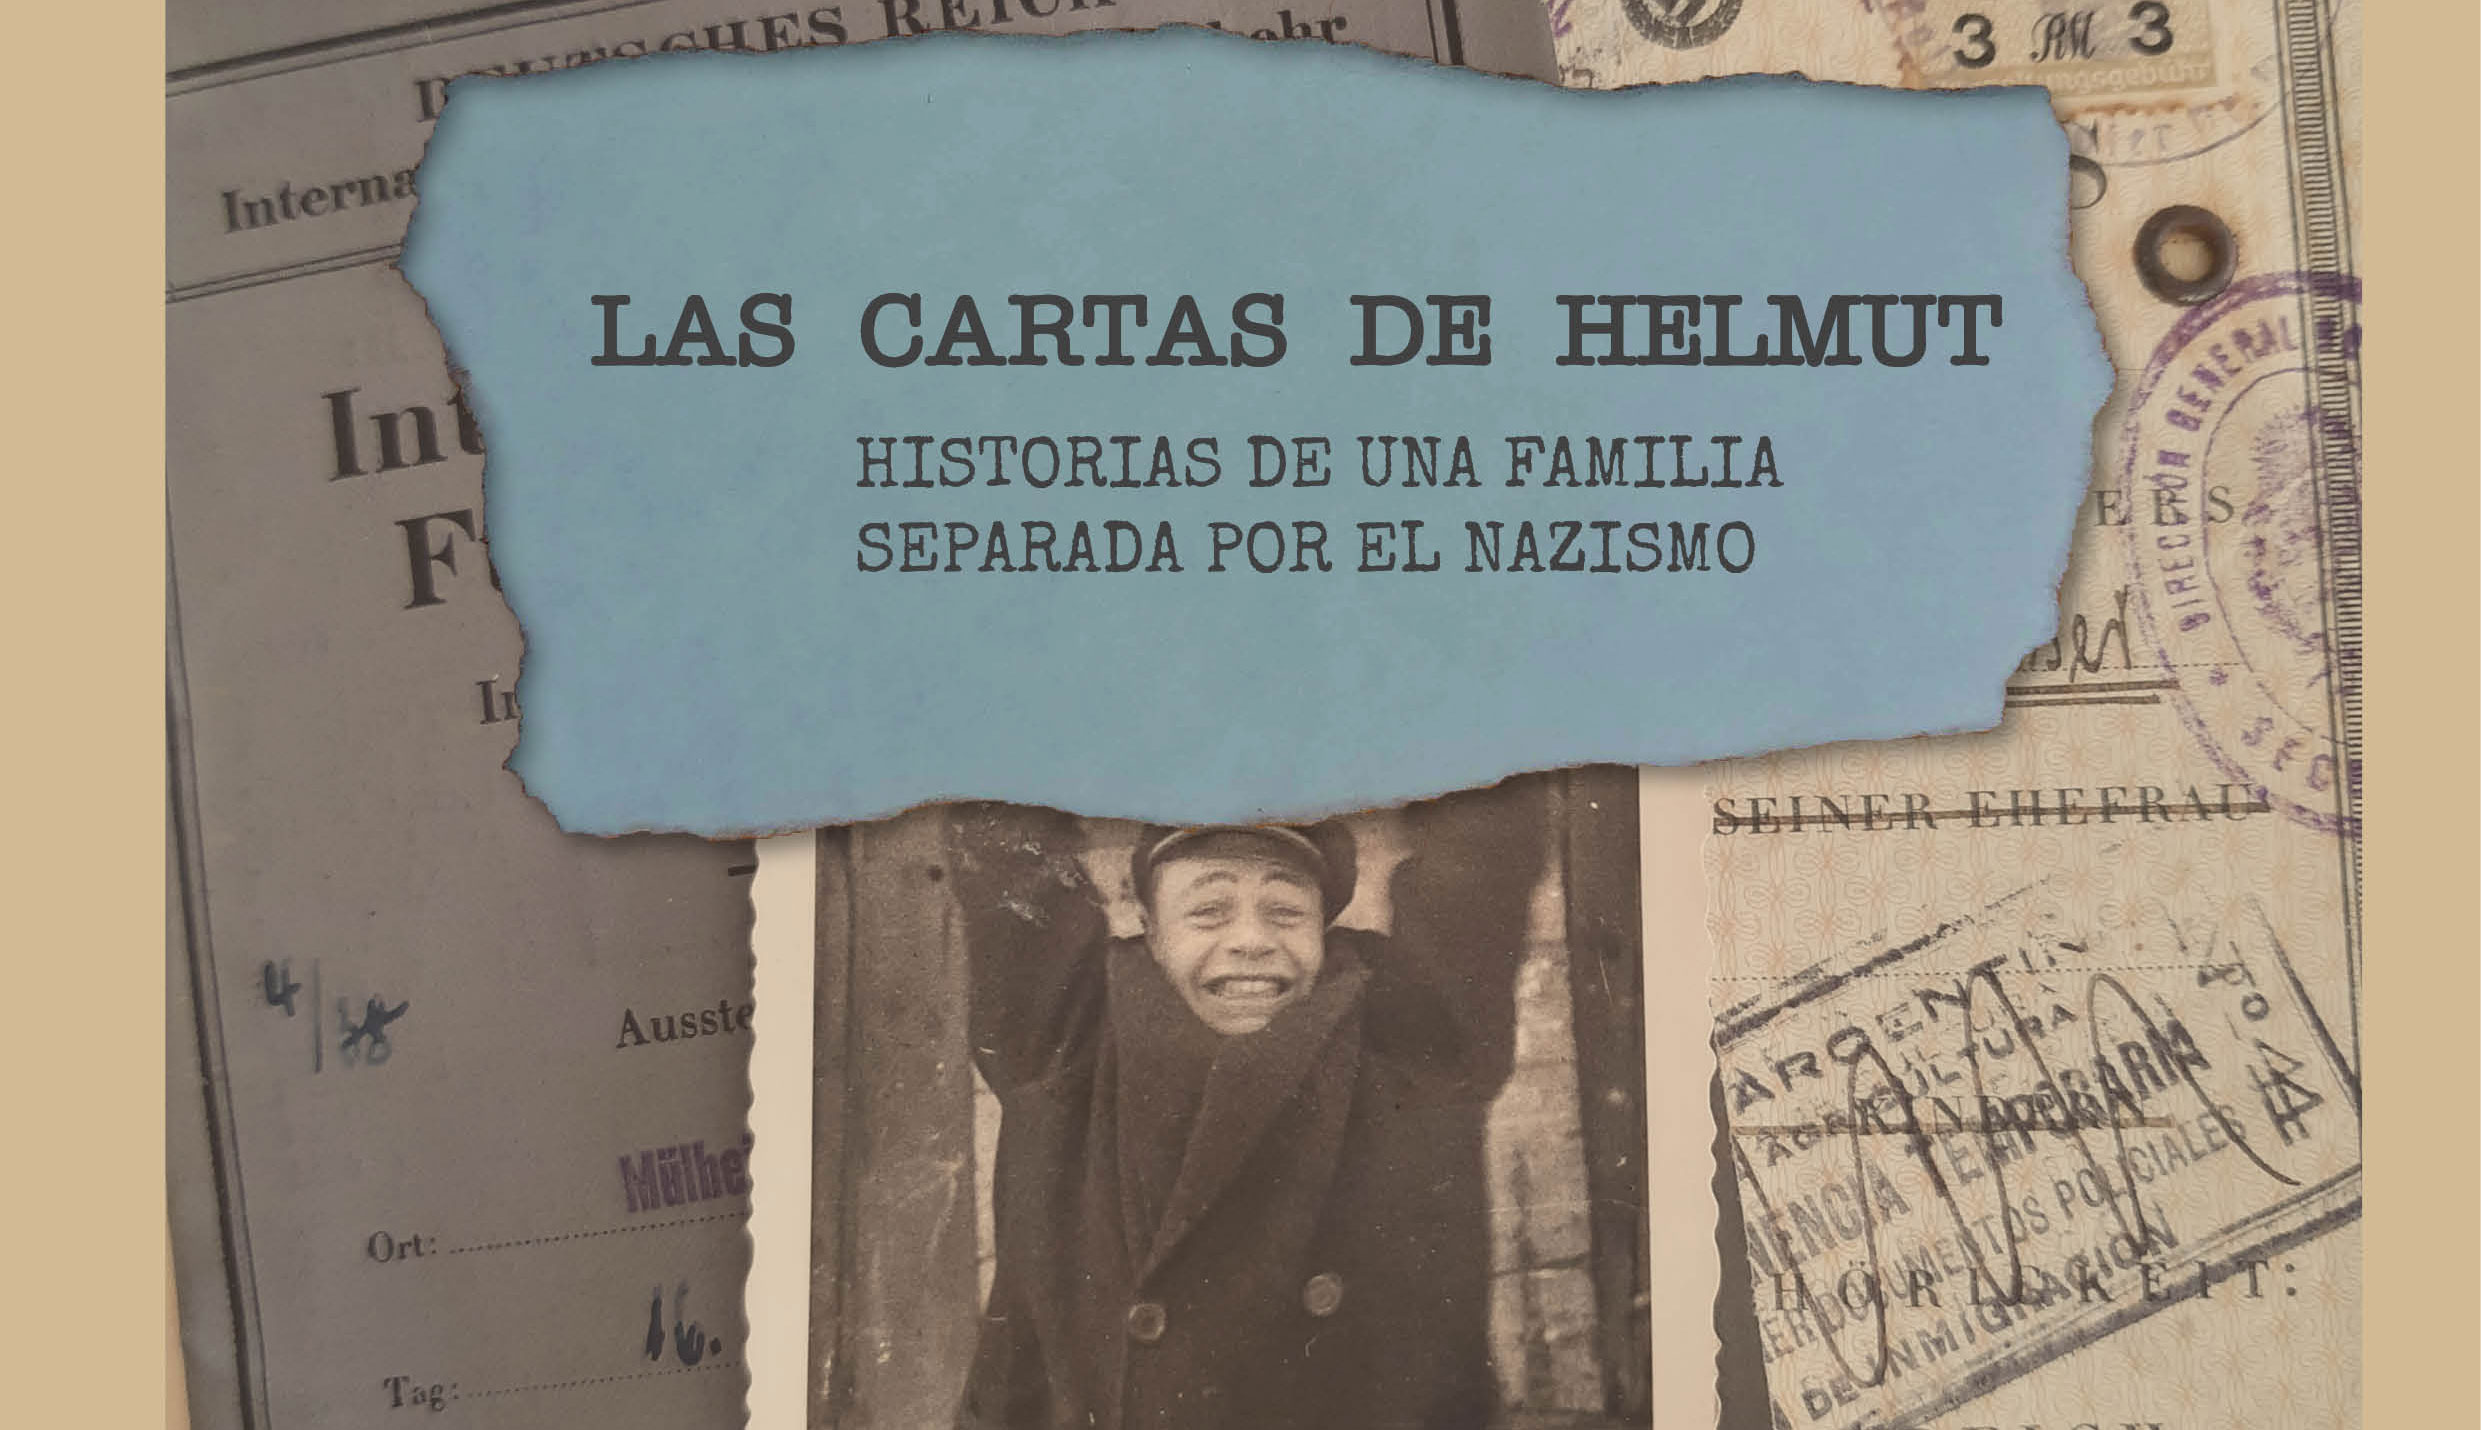 “Las Cartas de Helmut, historias de una familia separada por el nazismo”